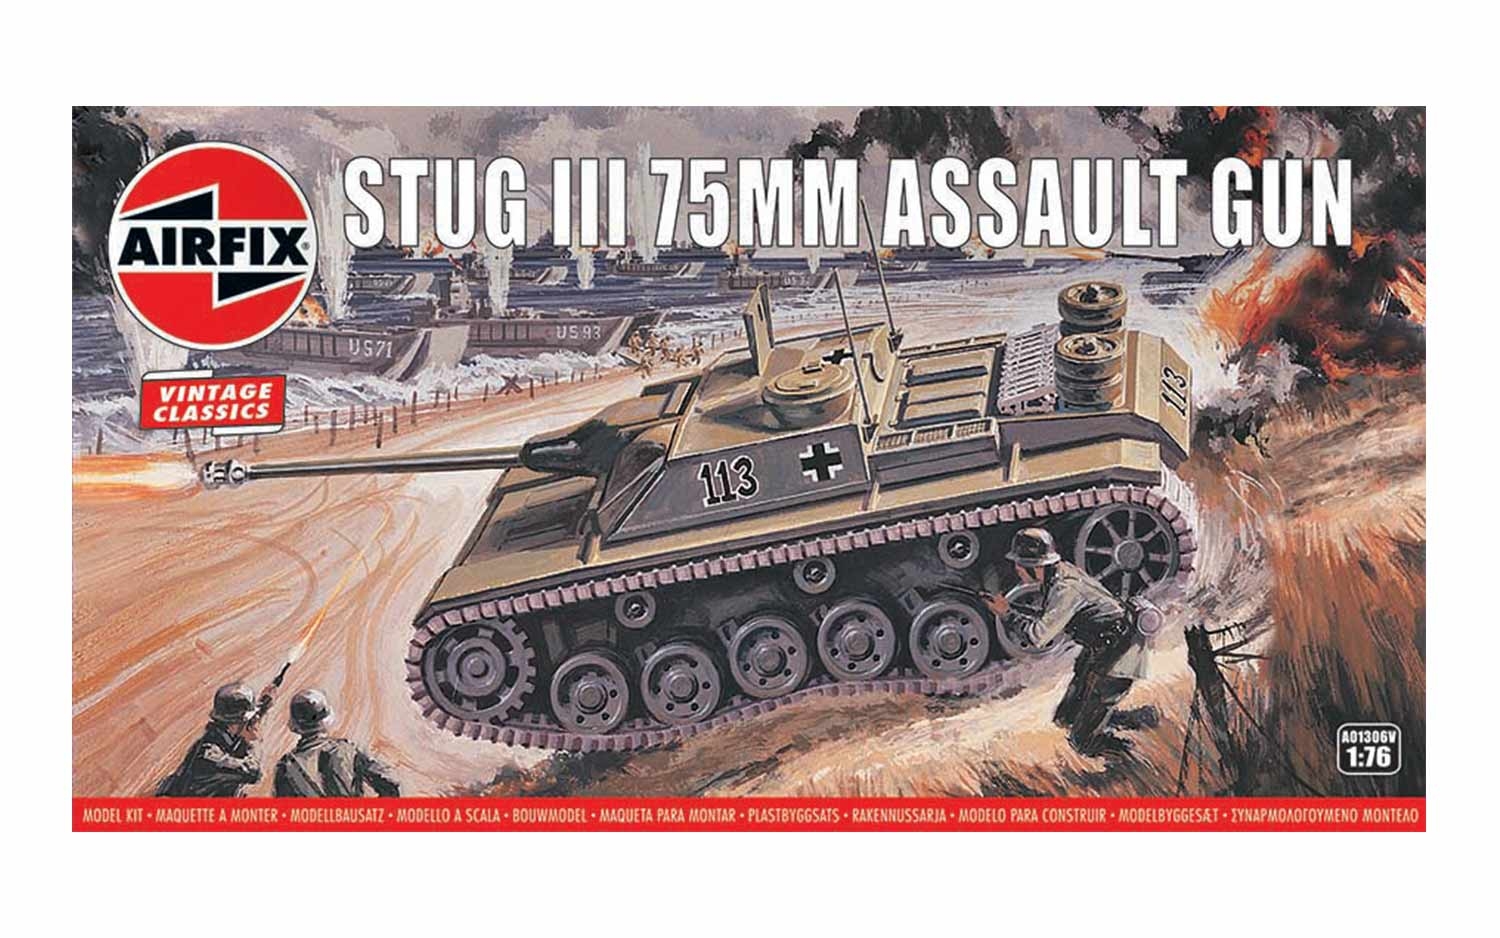 Stug III 75mm Assault Gun